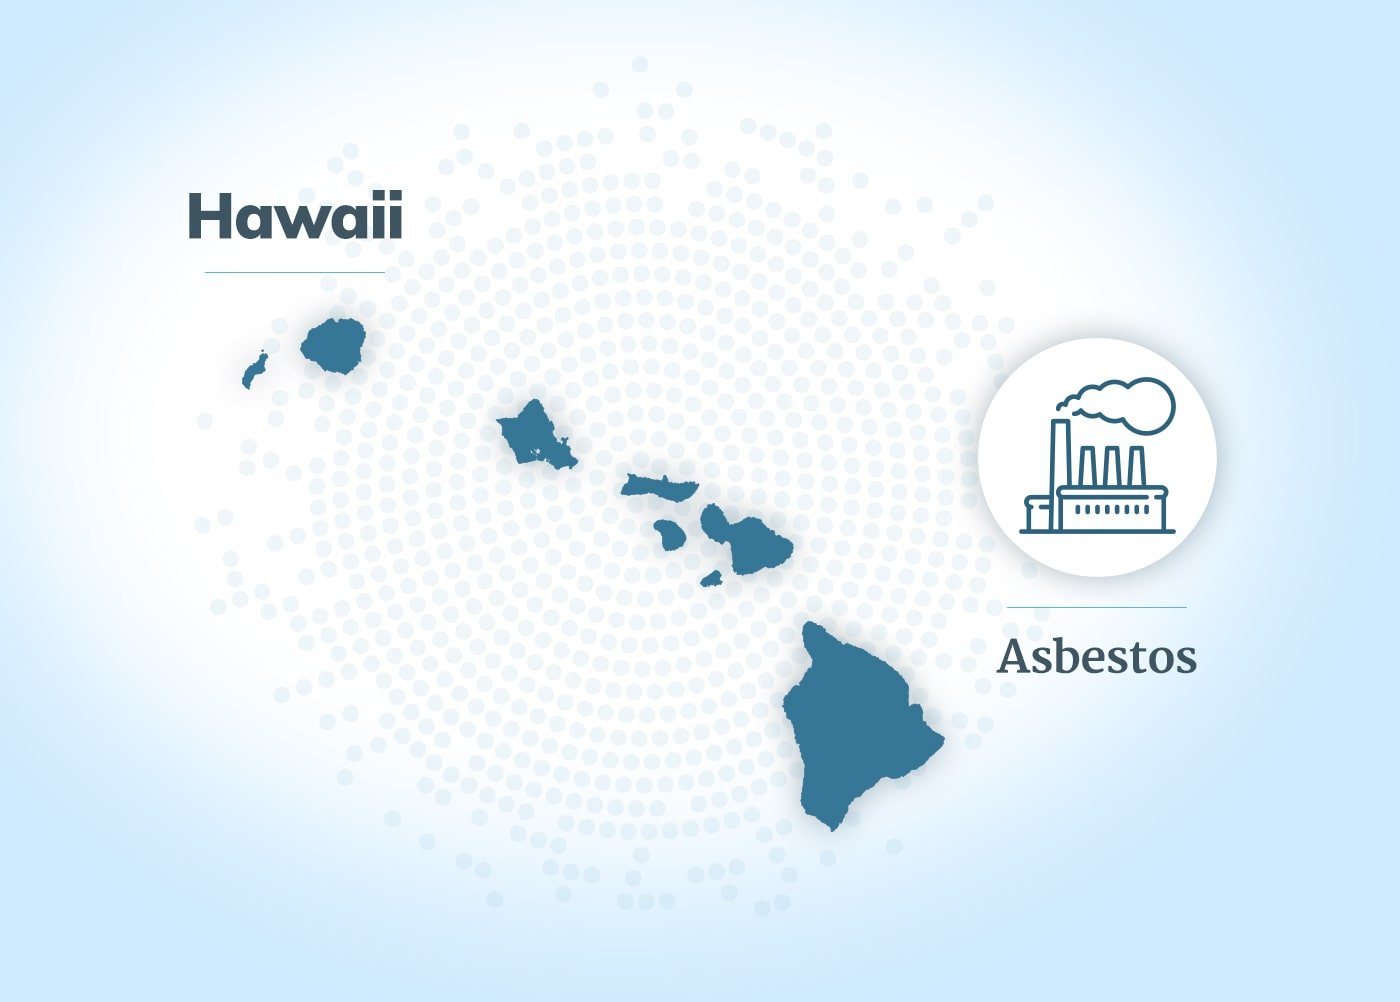 Asbestos exposure in Hawaii